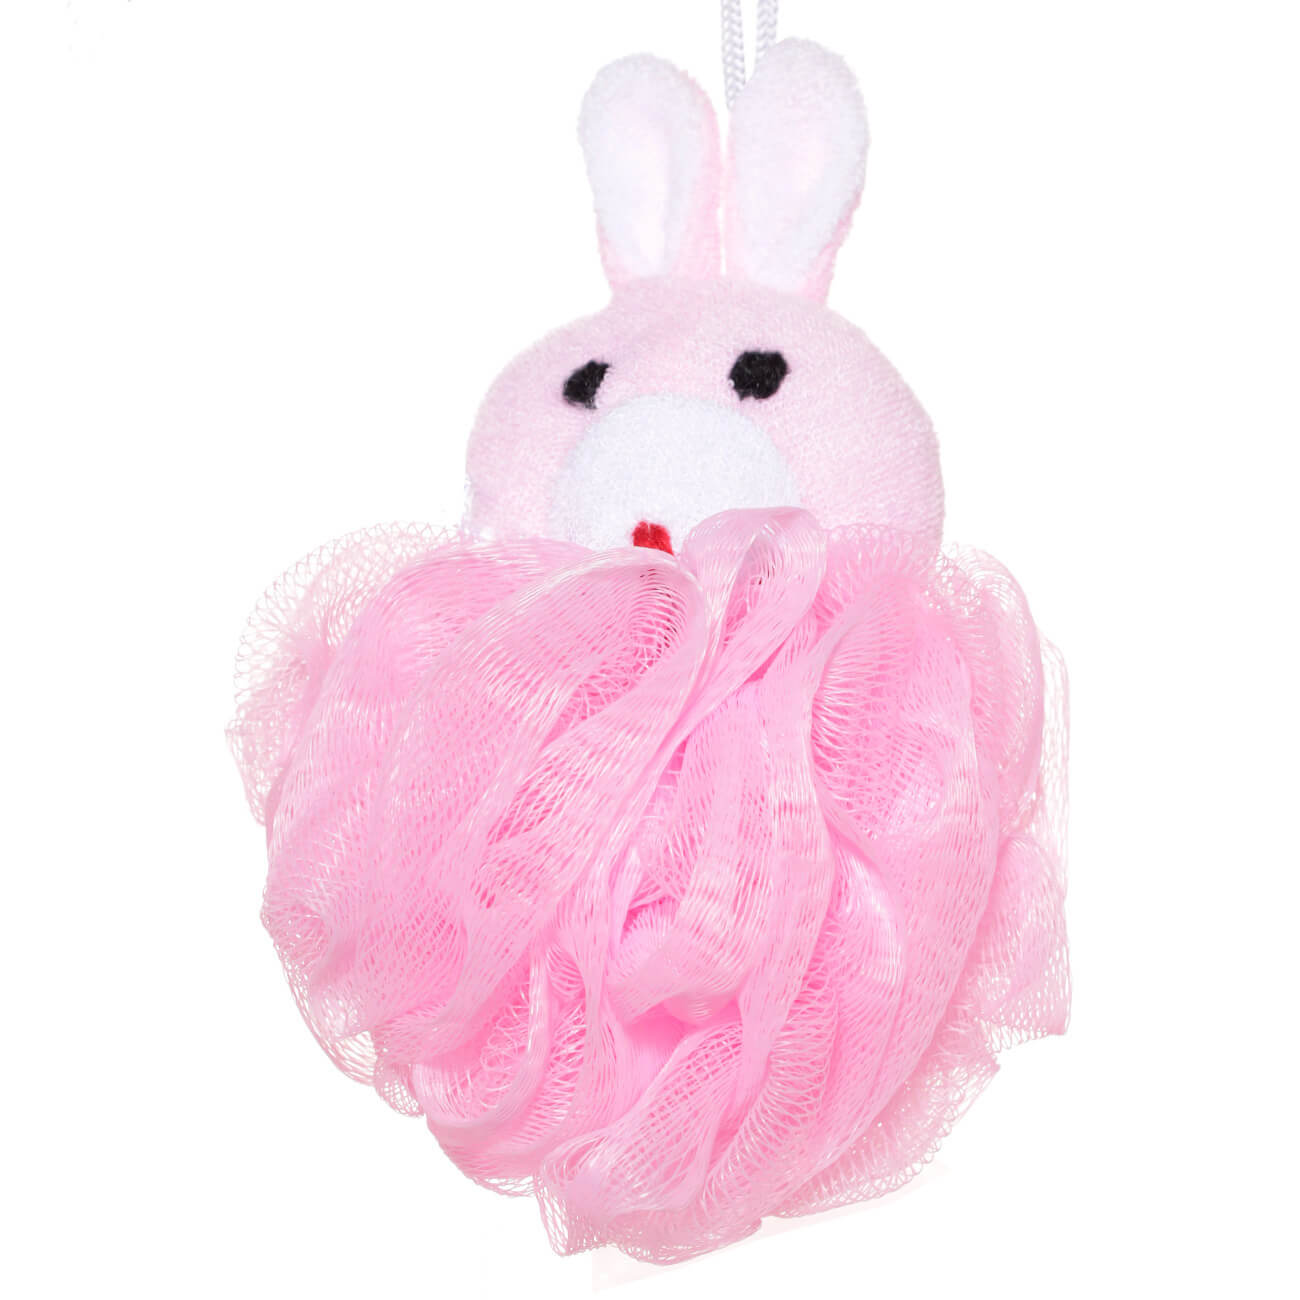 Мочалка для мытья тела, 12 см, детская, полиэтилен/полиэстер, розовая, Заяц, Rabbit губка для тела детская